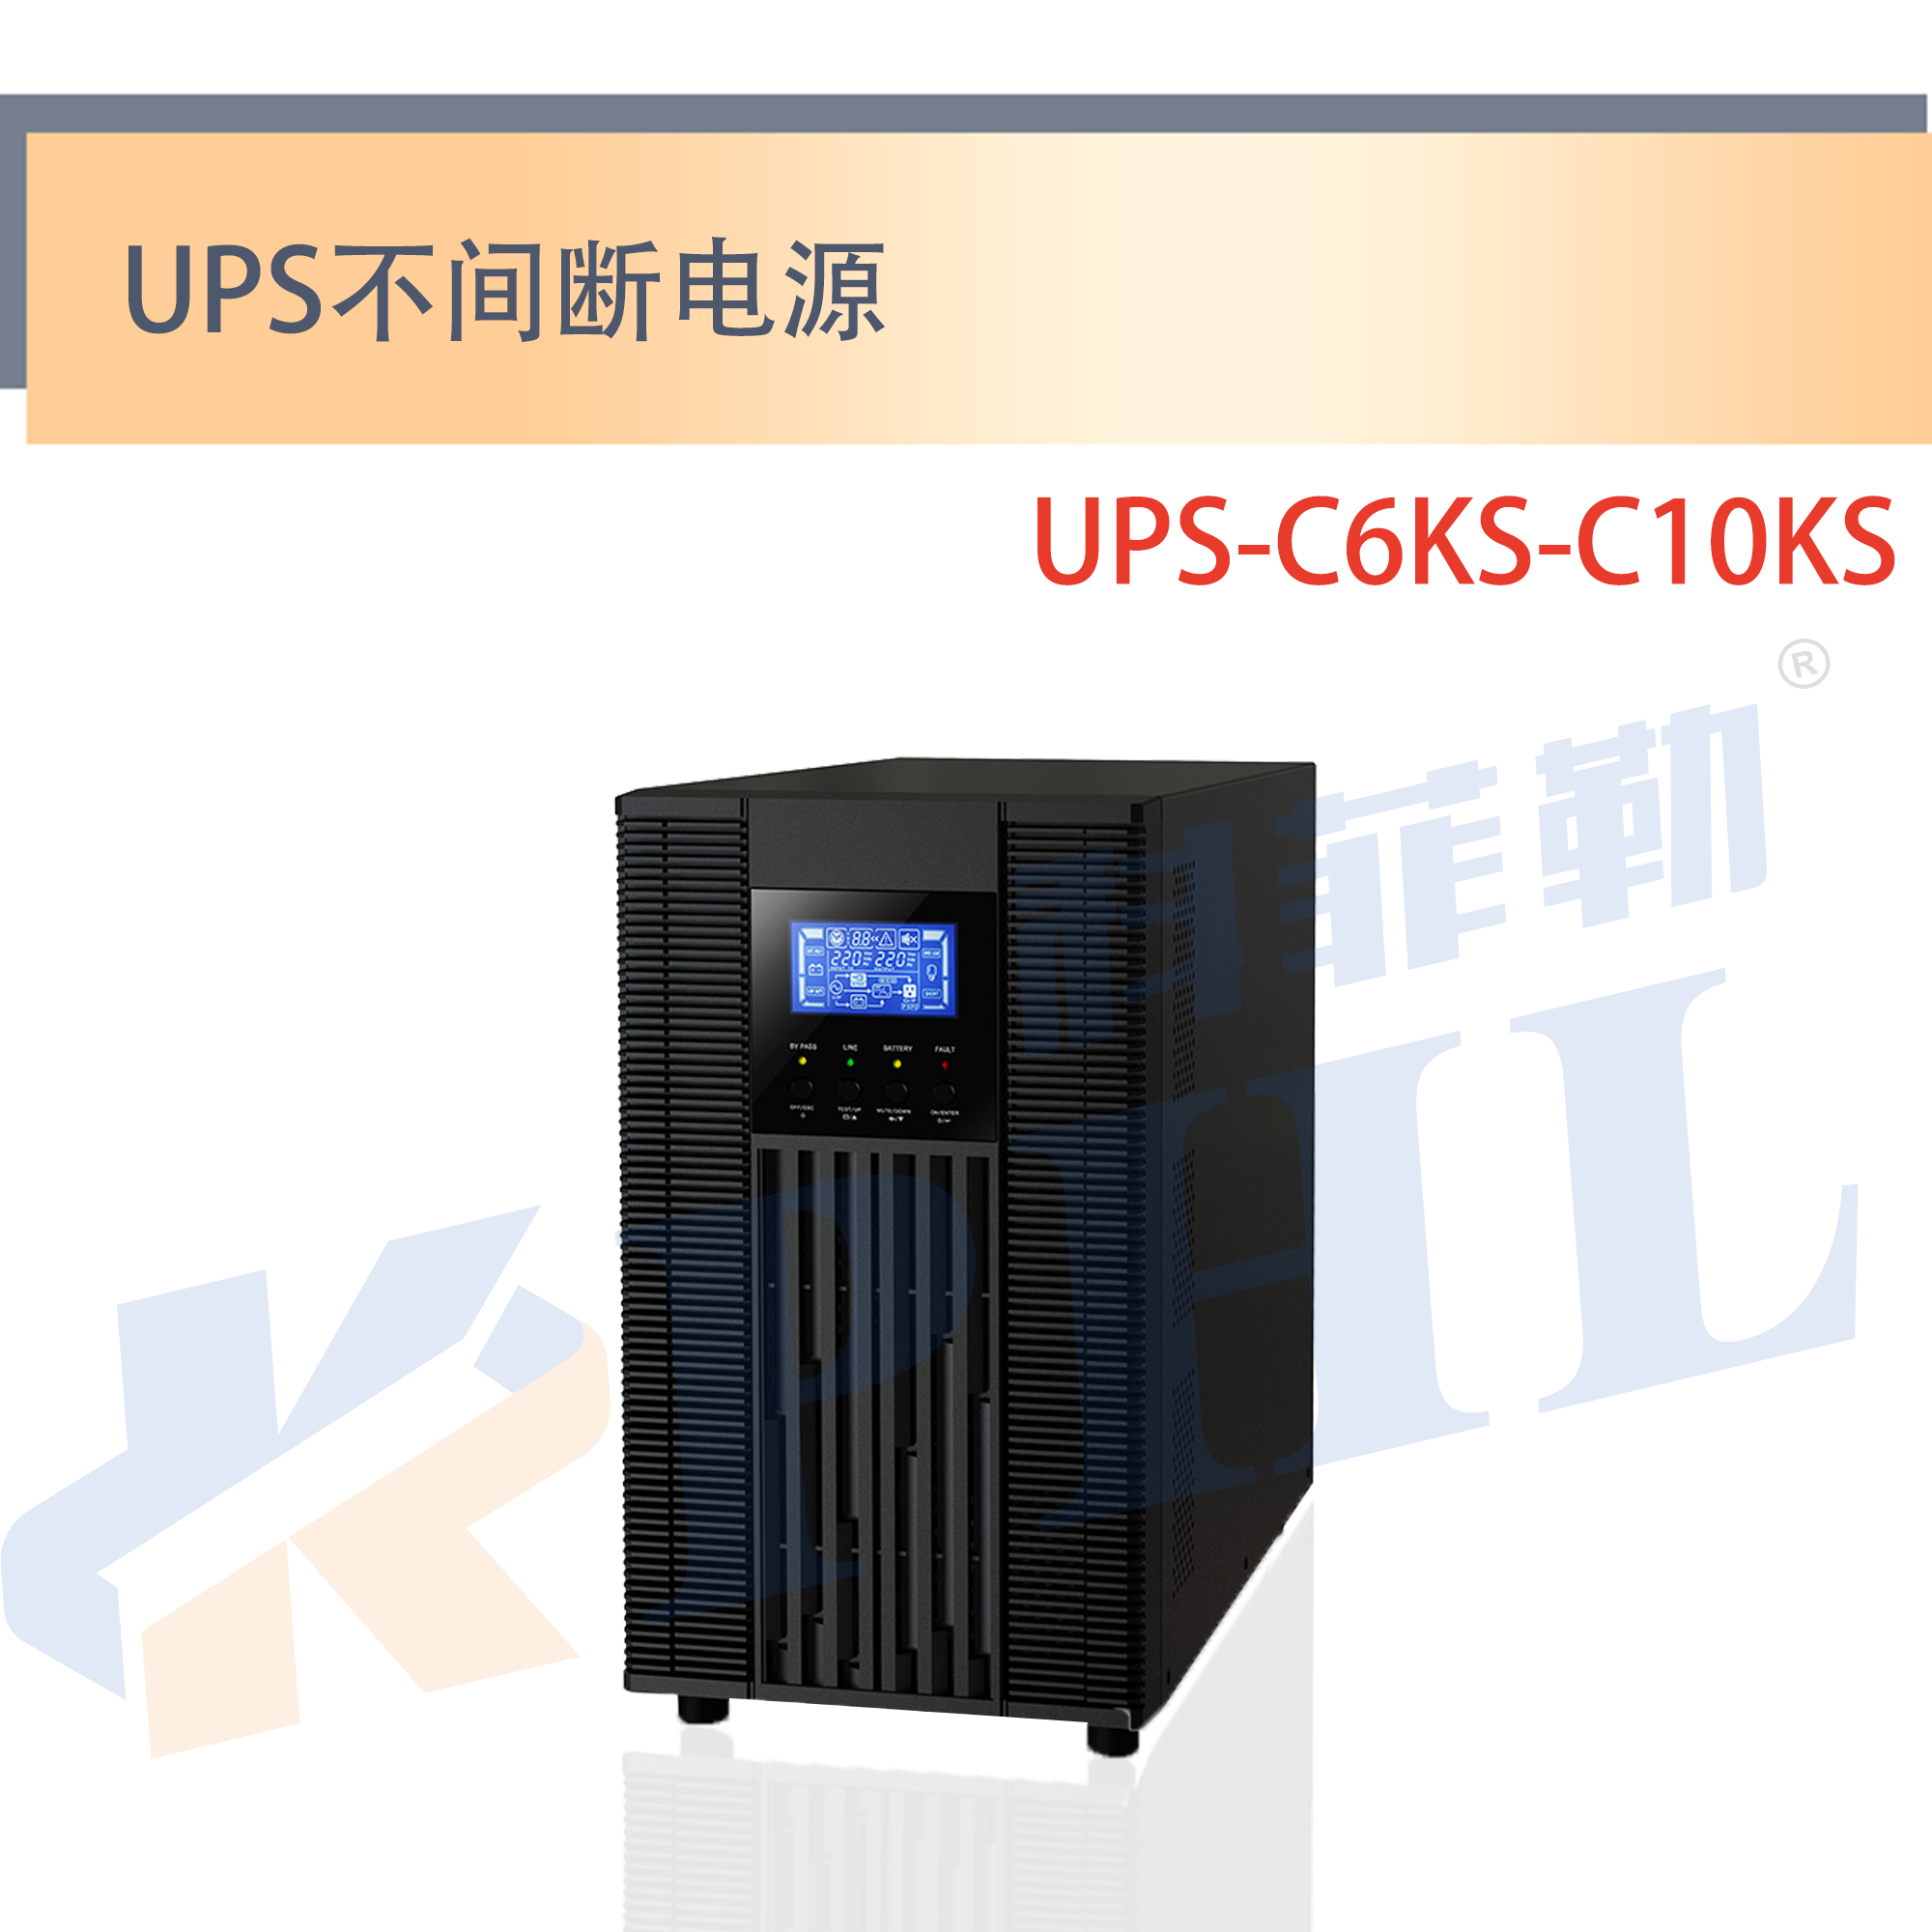 UPS-C6KS-C10KS